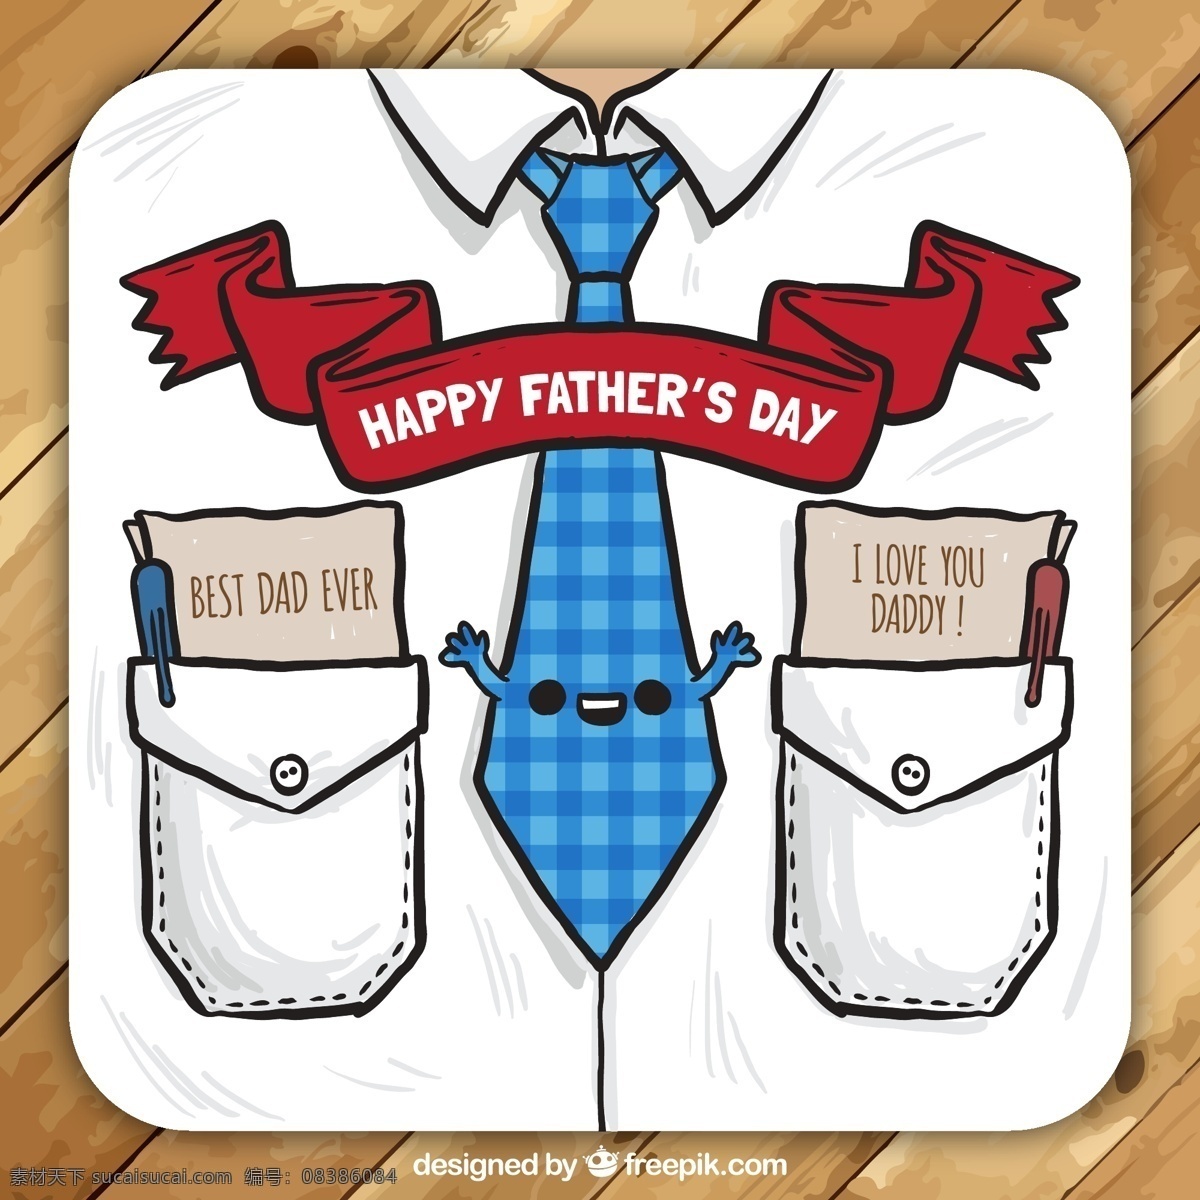 彩绘 服饰 父亲节 贺卡 矢量 衬衫 领带 卡片 happy fathers day 木板 矢量图